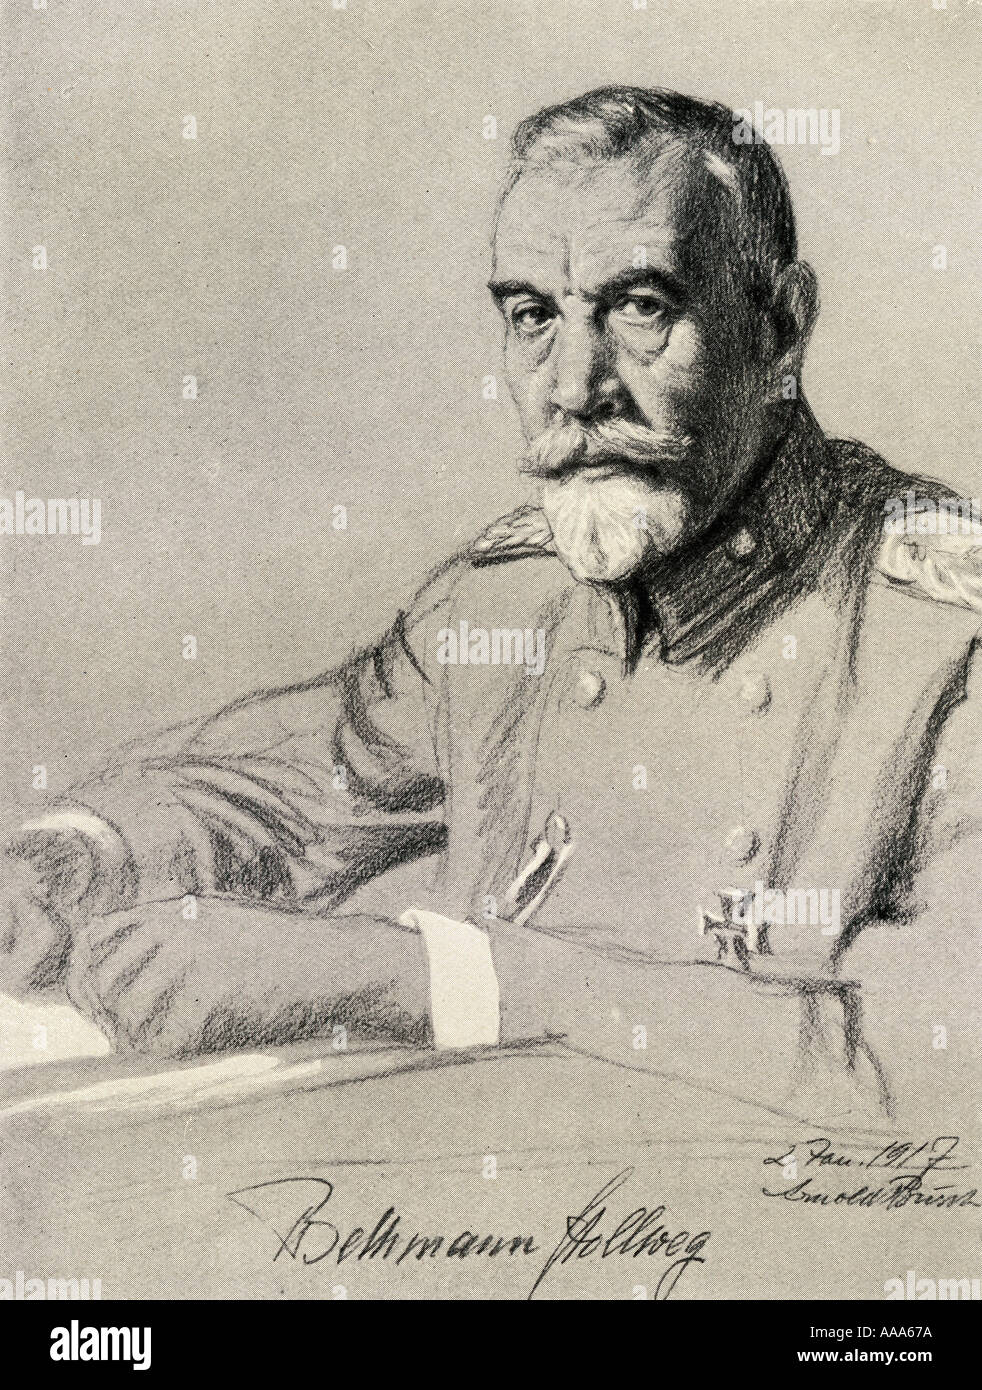 Theodor Friedrich Alfred Theobald von Bethmann-Hollweg, 1856 - 1921. Deutsche Politiker und Kanzler des Deutschen Reiches, 1909 - 1917. Stockfoto